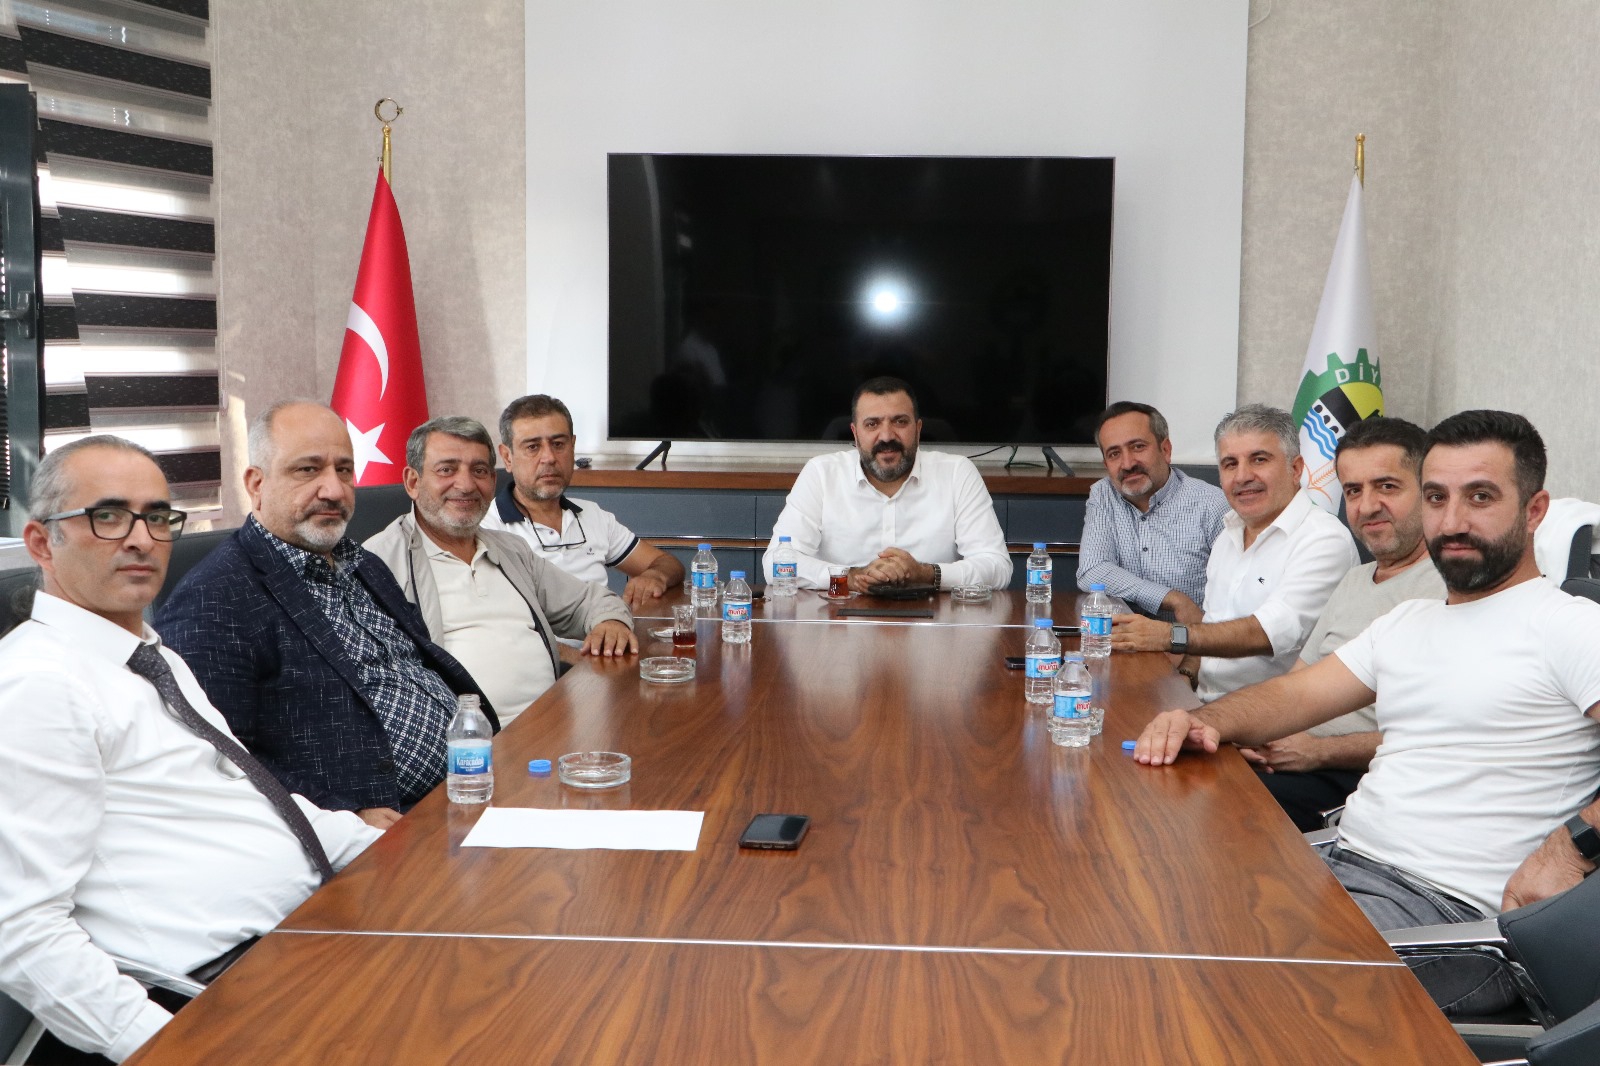 Sanayicilerimiz, Mustafa Fidan ve yönetimi ile görüşerek, elektrik ve GES konularıyla ilgili görüş alış-verişinde bulunuldu.